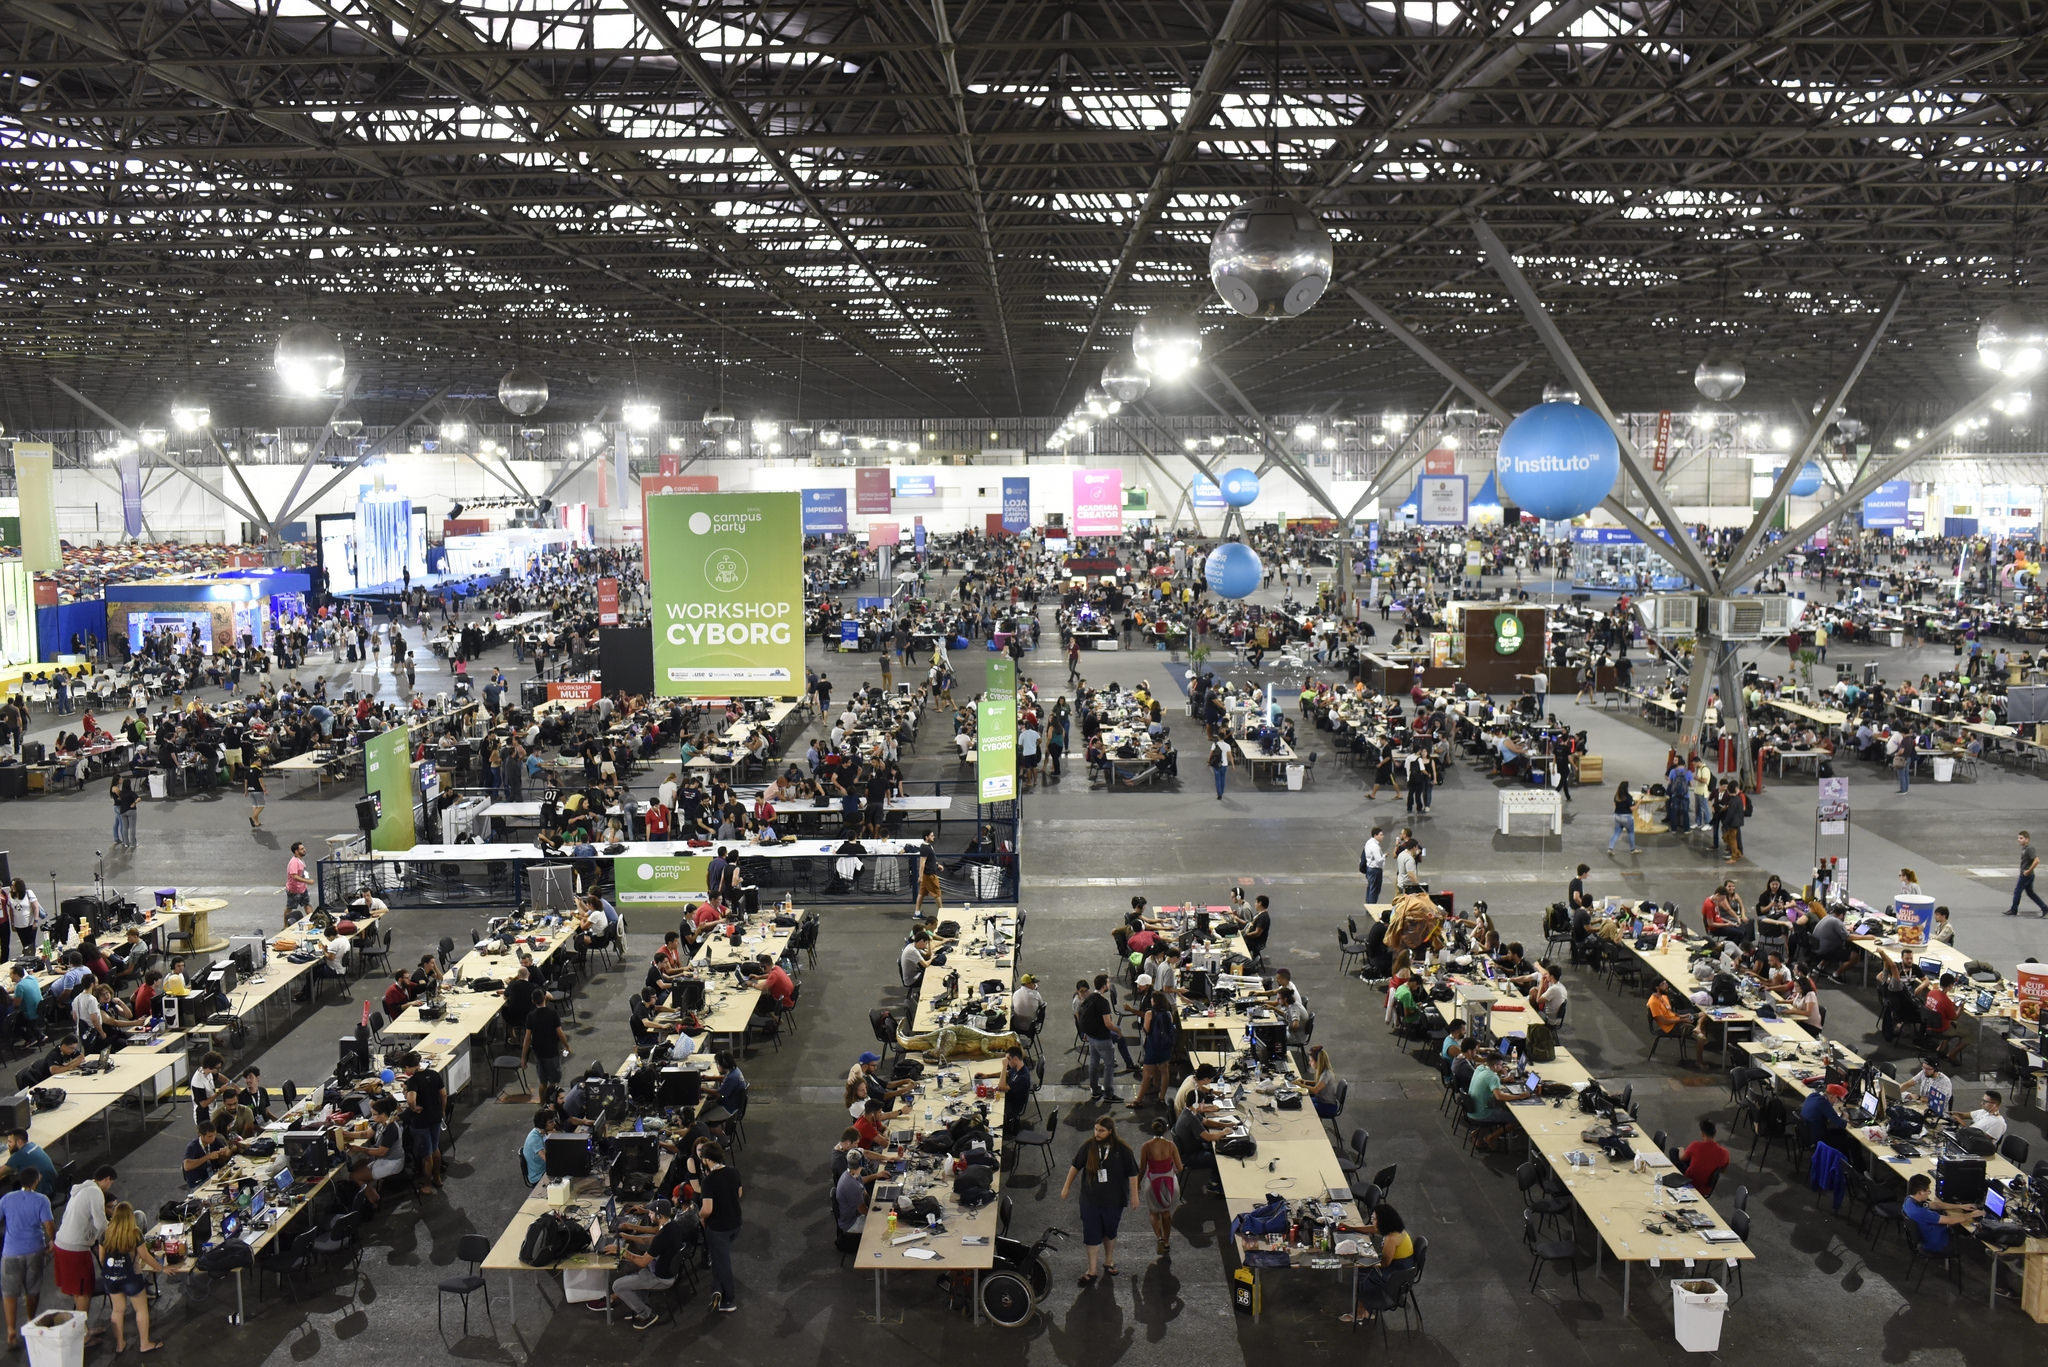 Campus Party Brasil confirma realização da edição em Brasília -  Mercado&Consumo